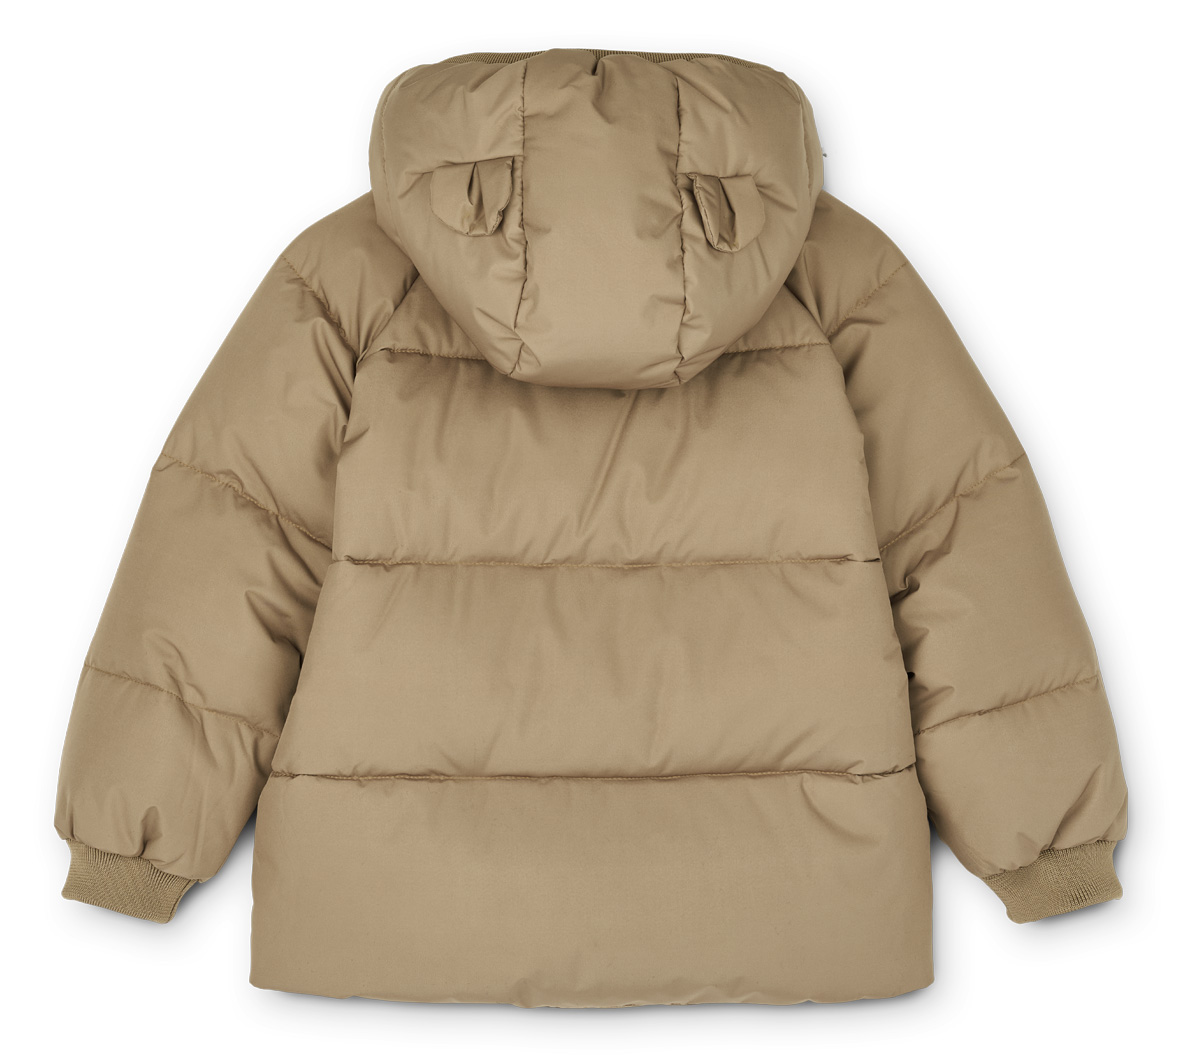 Polle puffer jacket oat winterjas met dons-voering jas met capuchon met oortjes beige lichtbruin grijs-bruin -